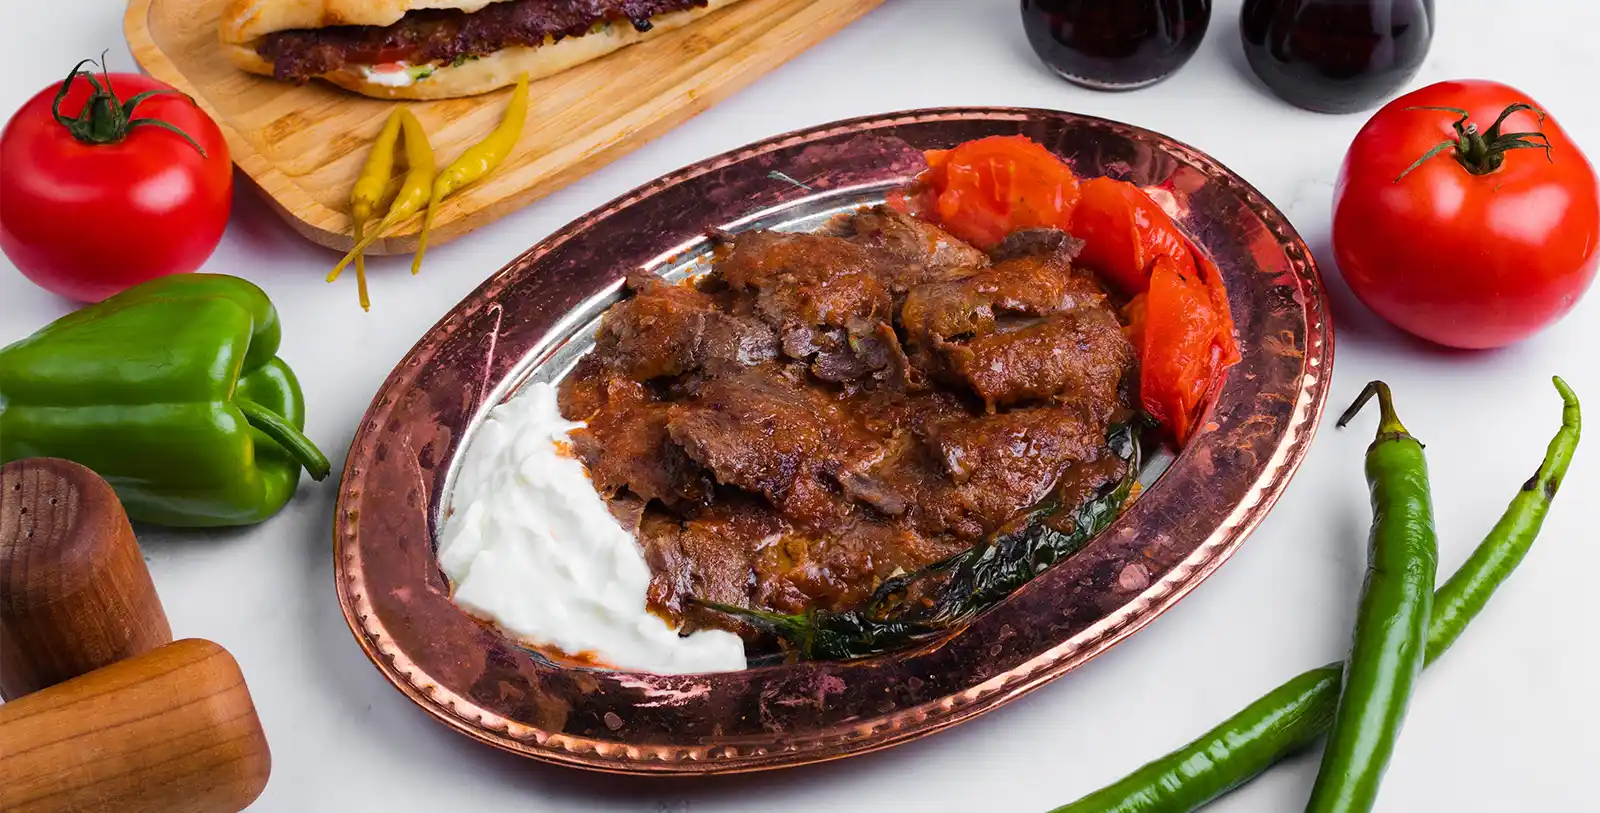 Iskender kebab is a delicious food invented in Bursa